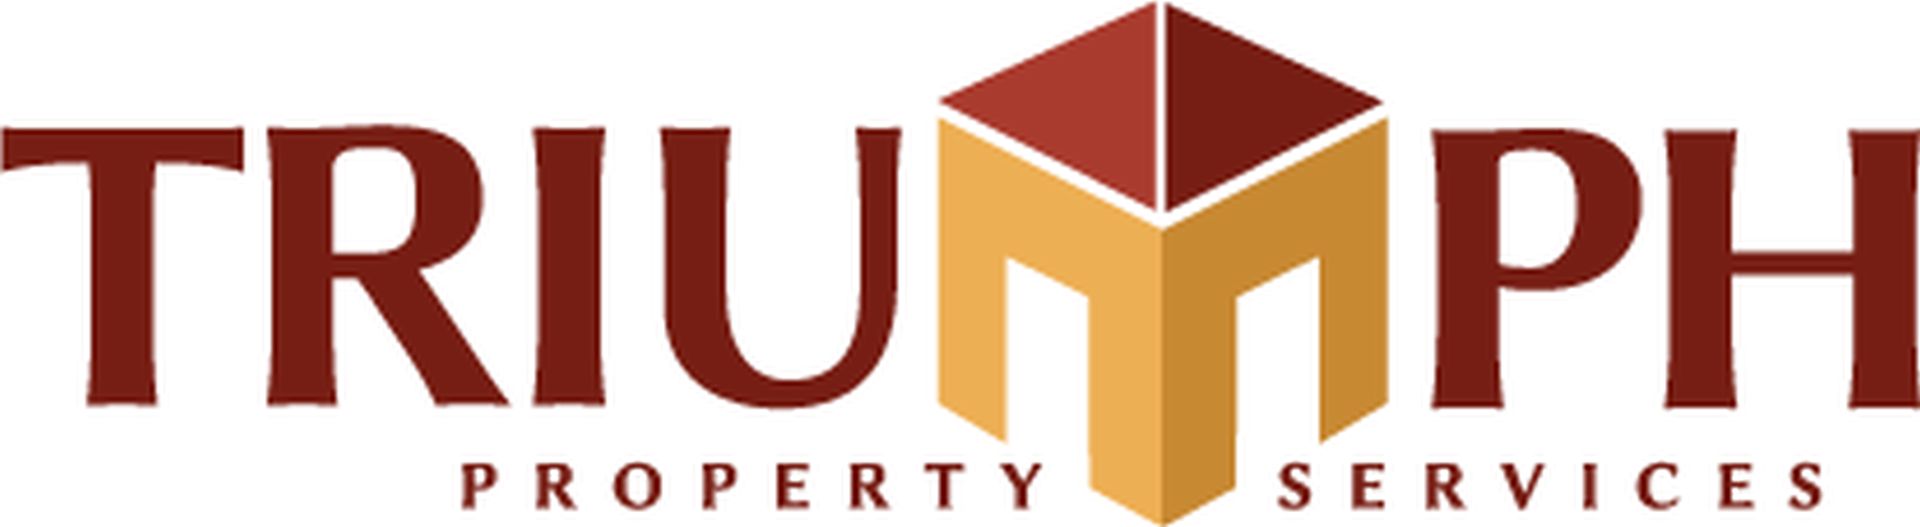 Triumph Property Services, Inc. Logo